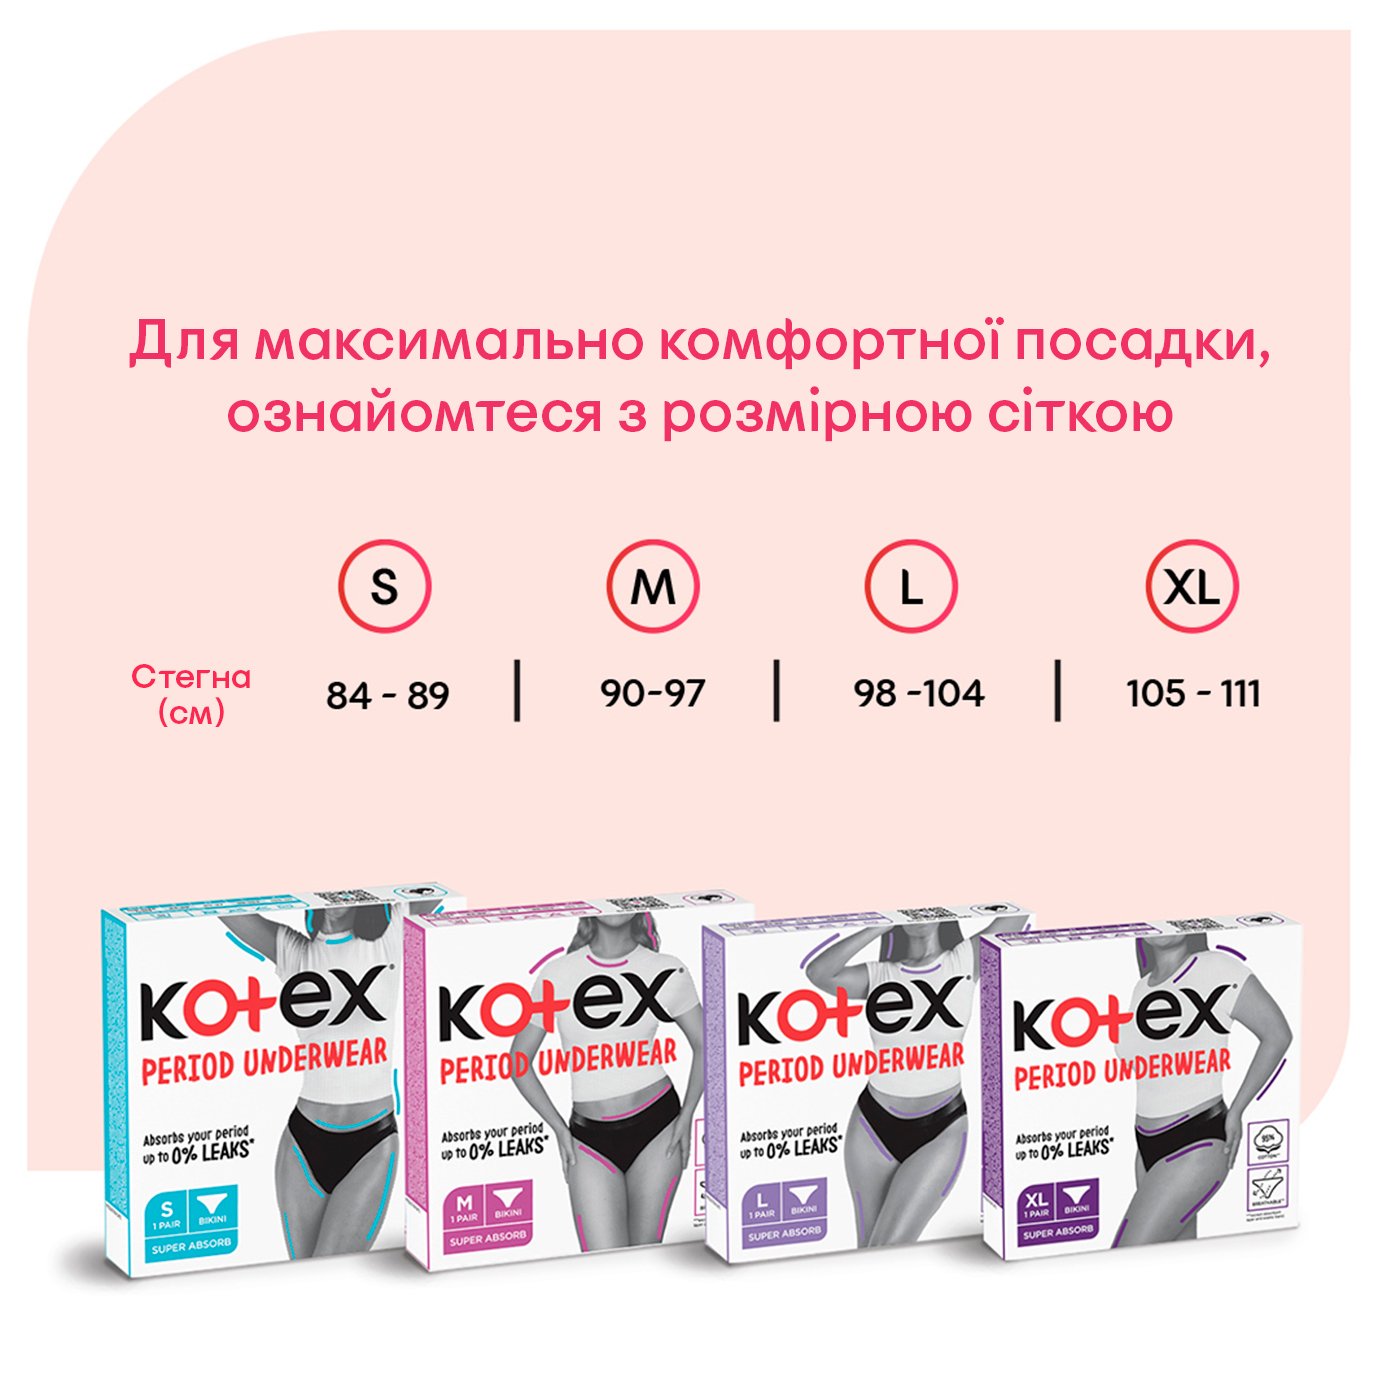 Менструальное белье Kotex размер XL 1 шт. - фото 7